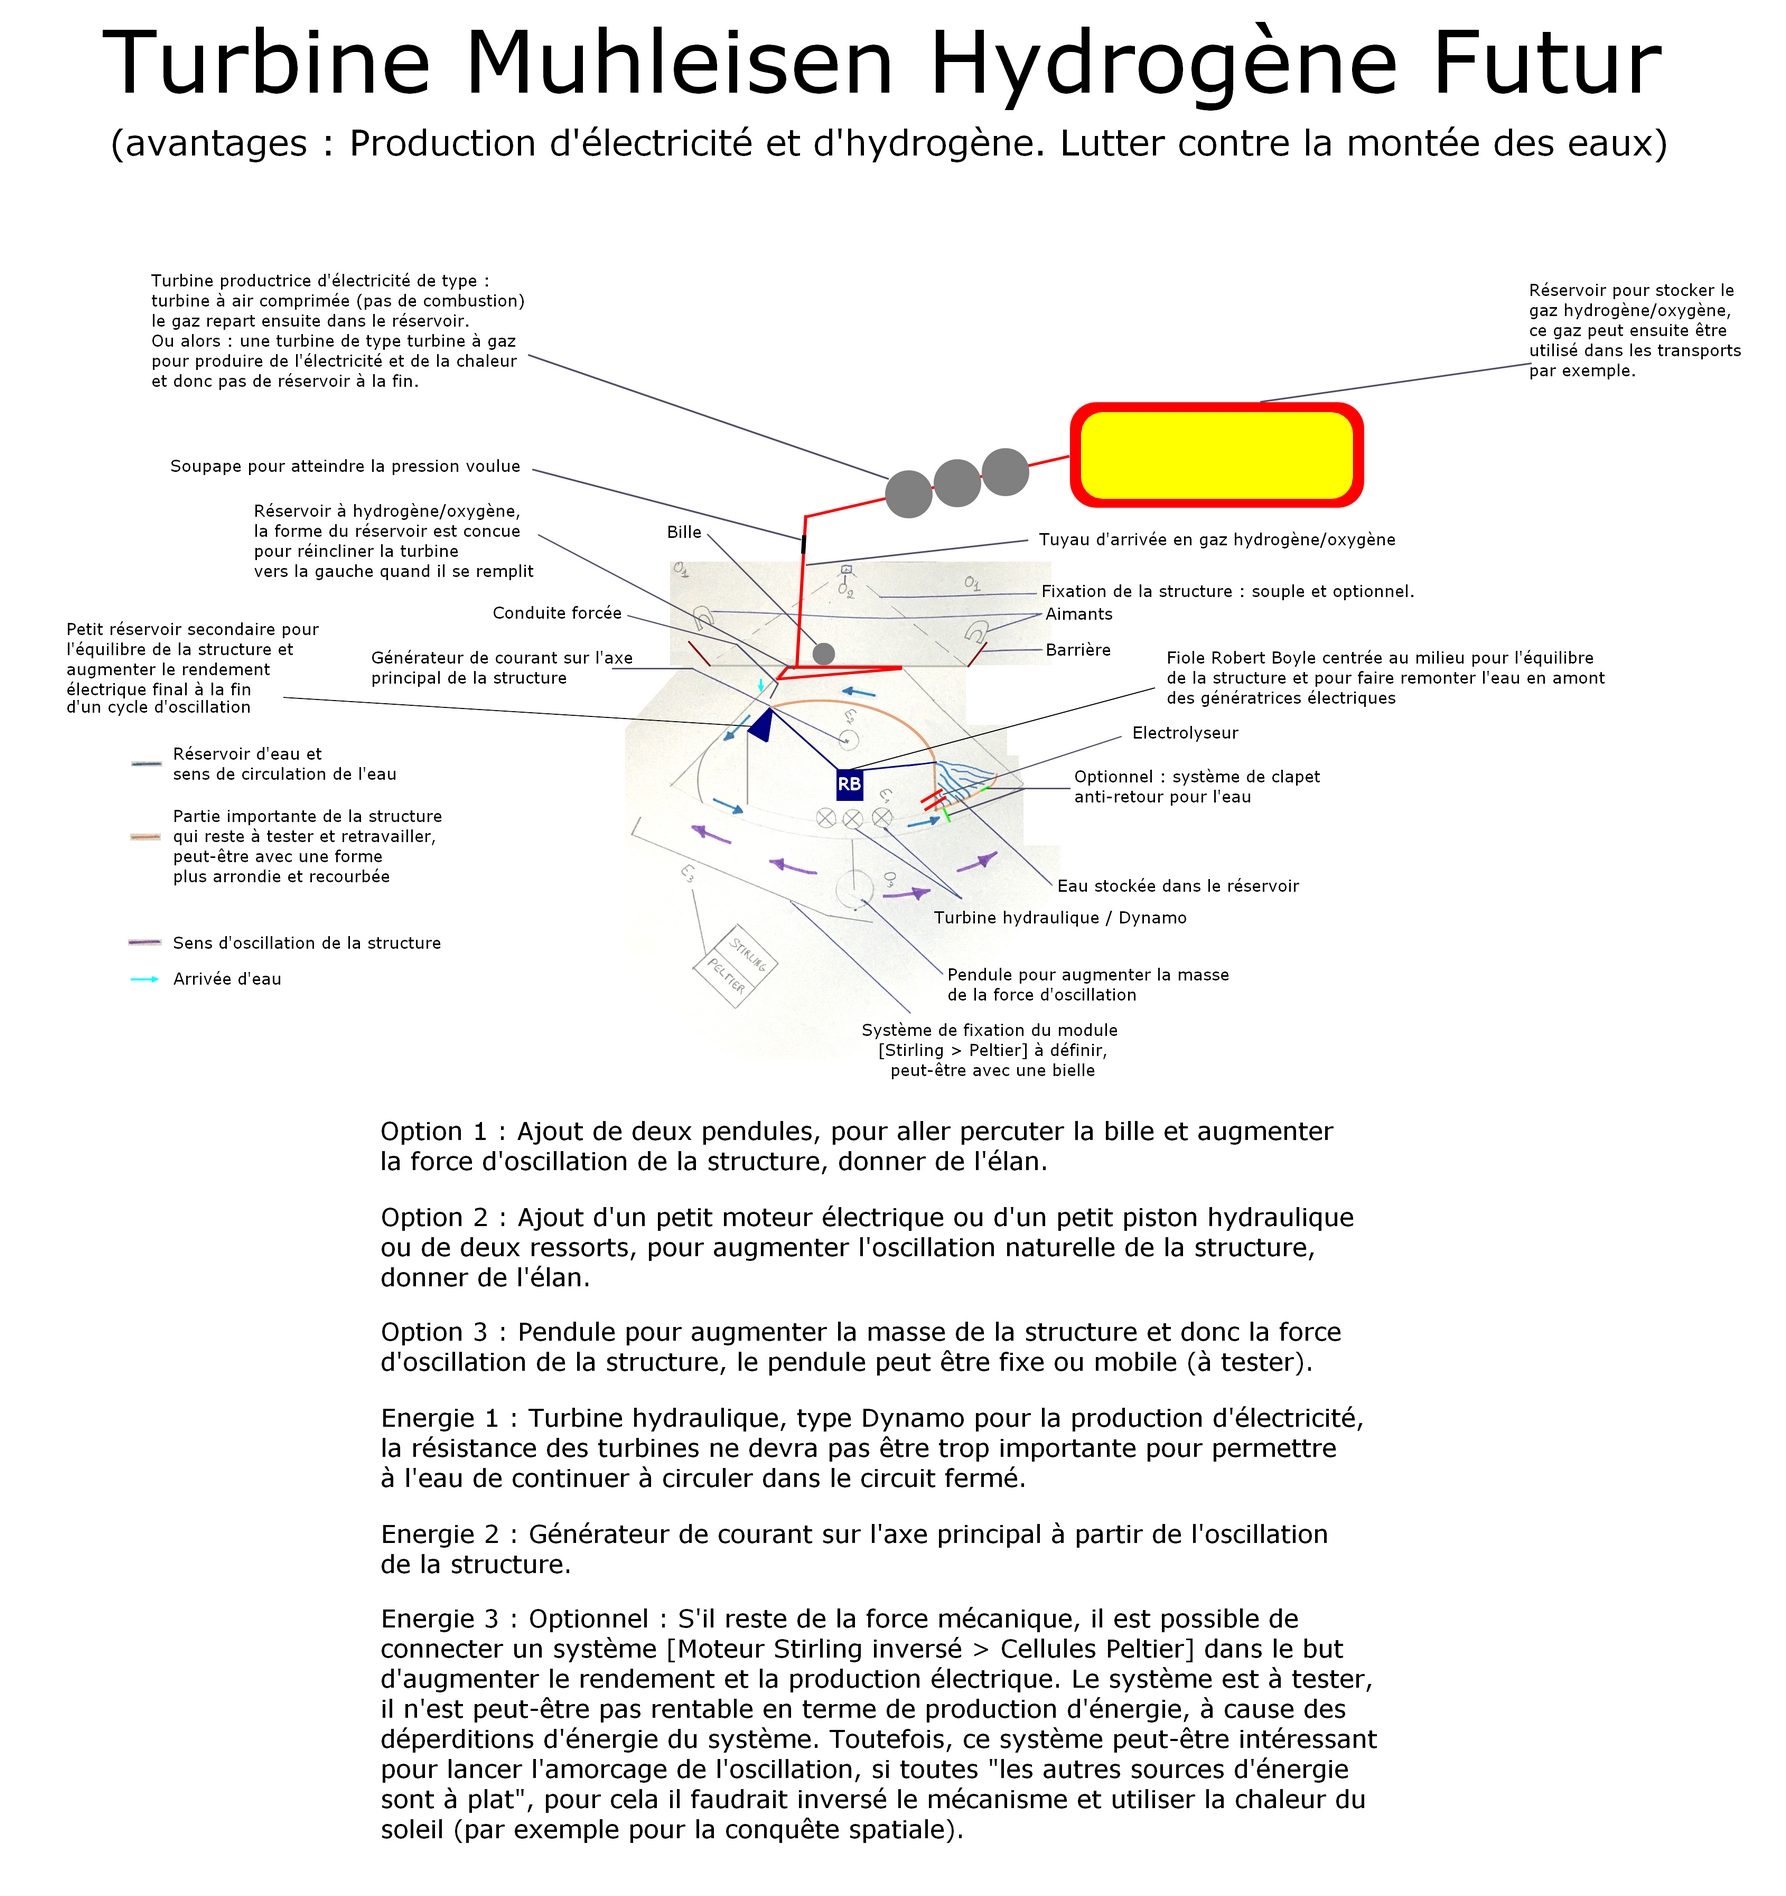 La Turbine Muhleisen version hydrogène 1 futur